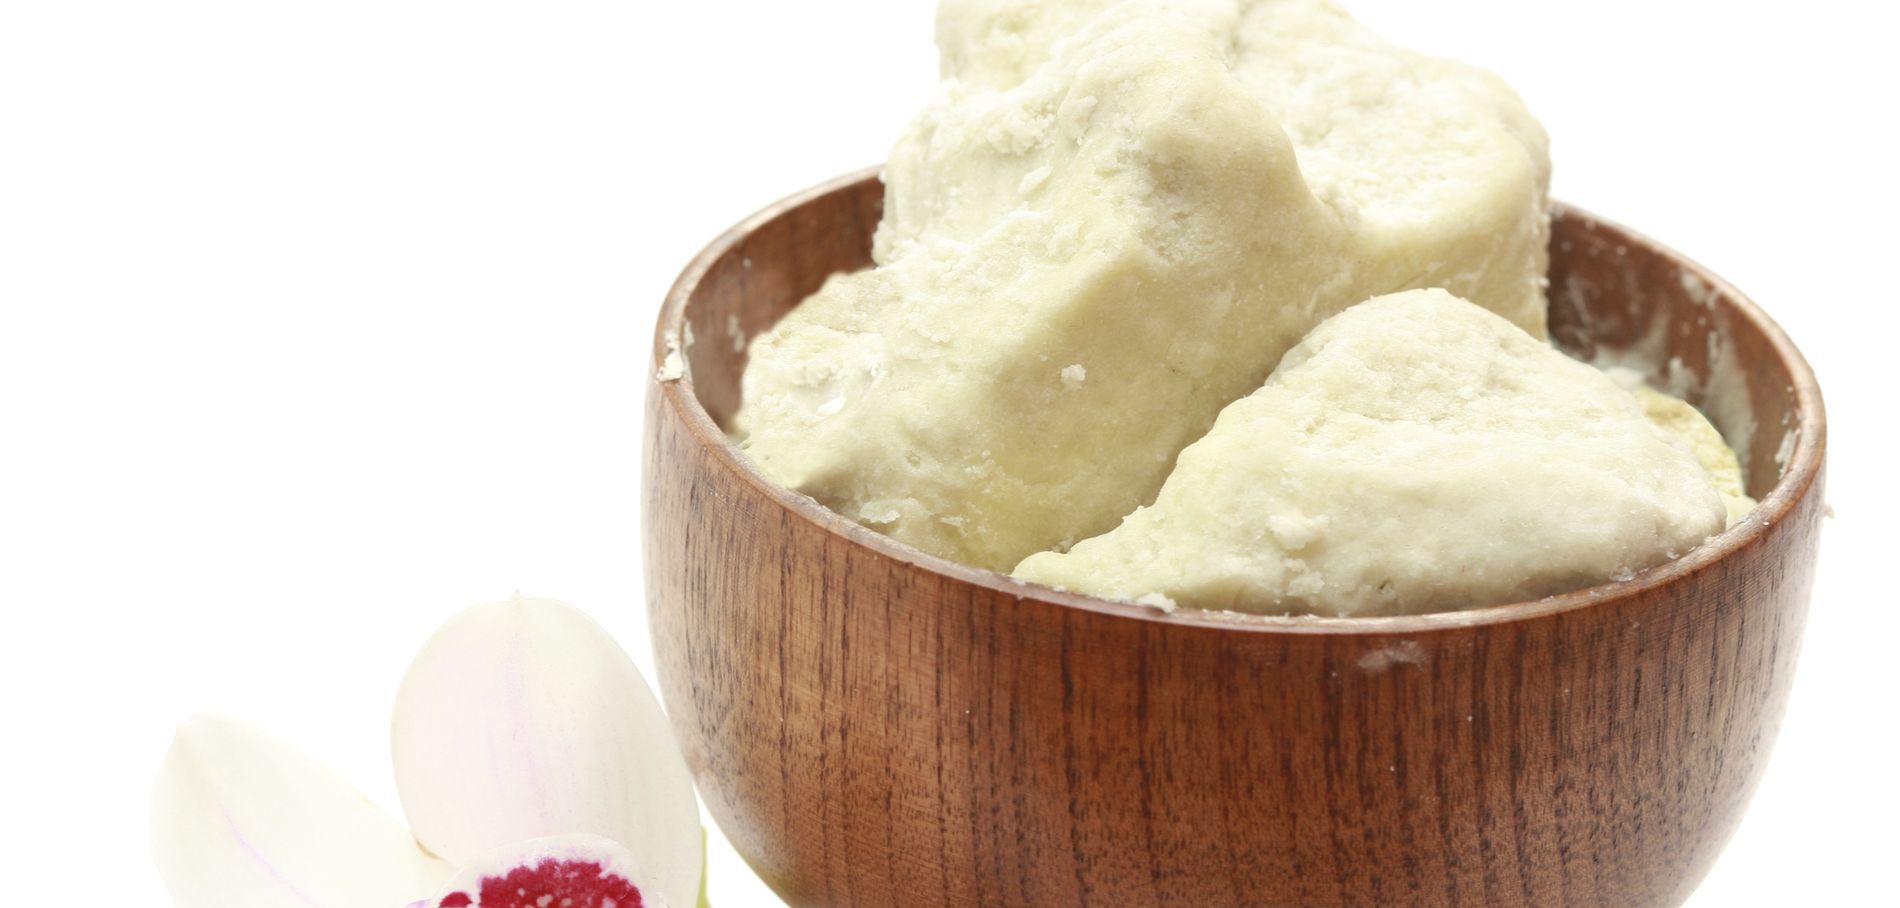 Os 7 benefícios da manteiga de karité sobre os quais sabemos pouco.